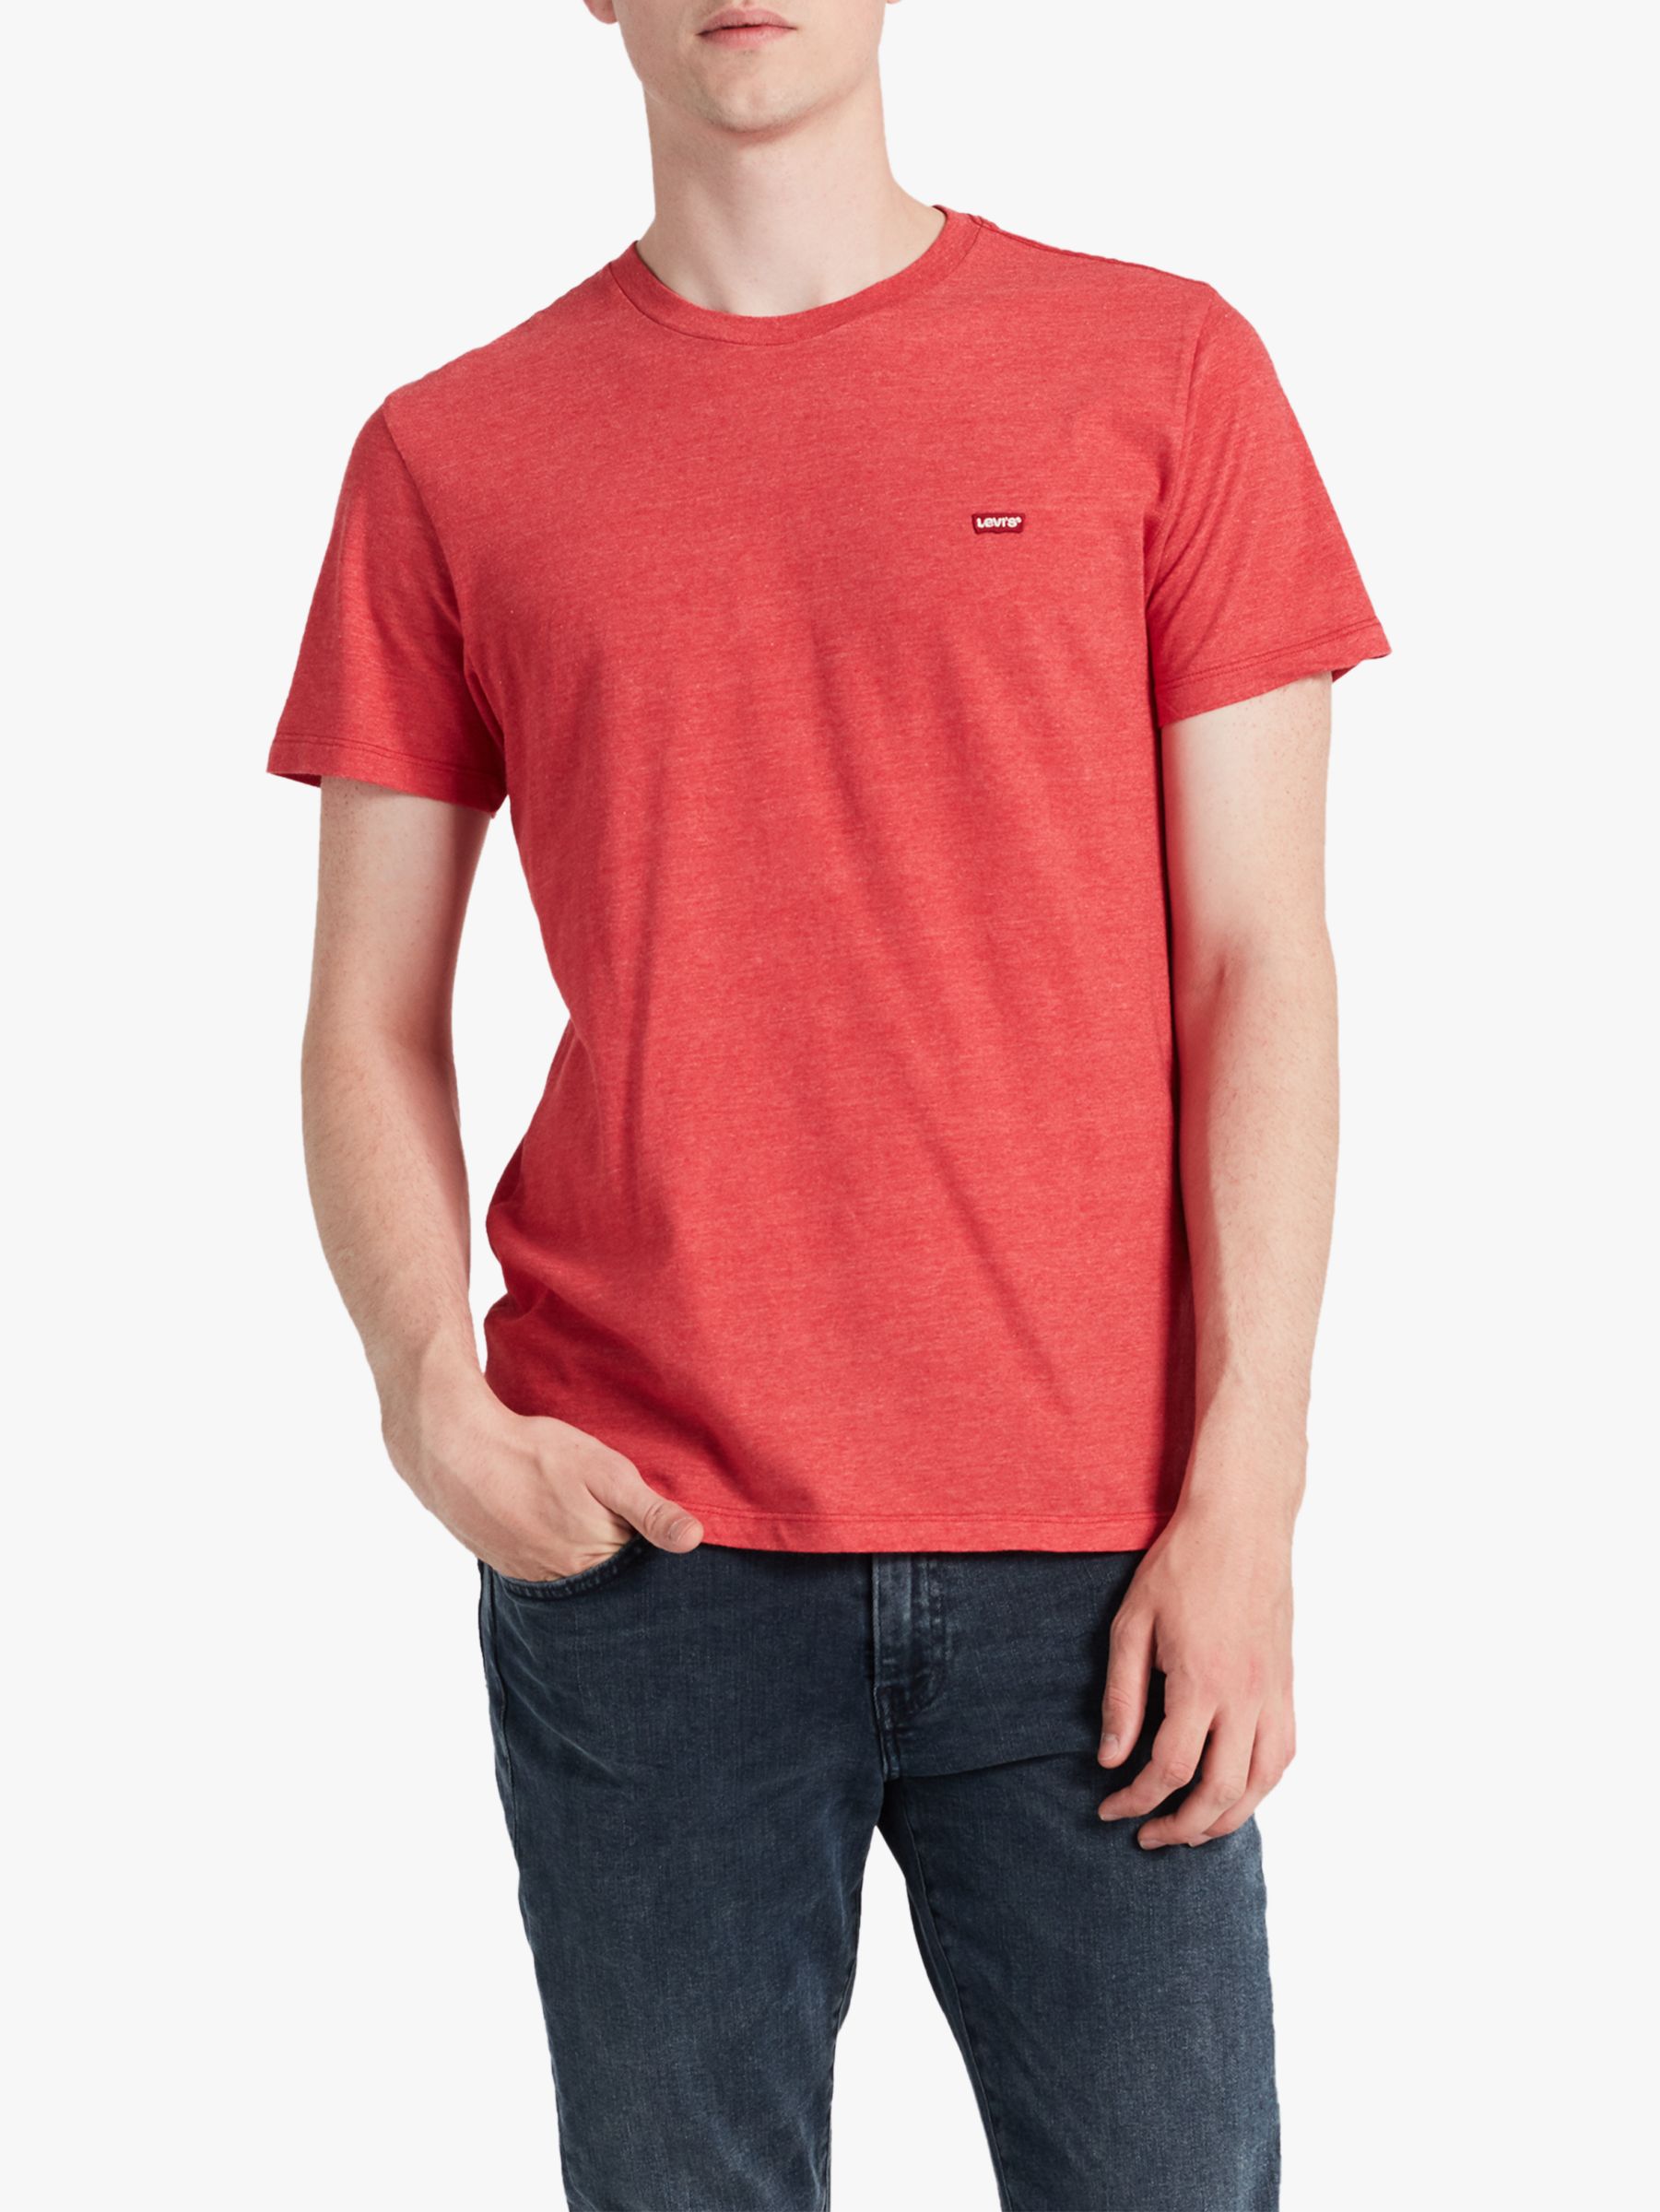 Levi's Original T-Shirt, Red